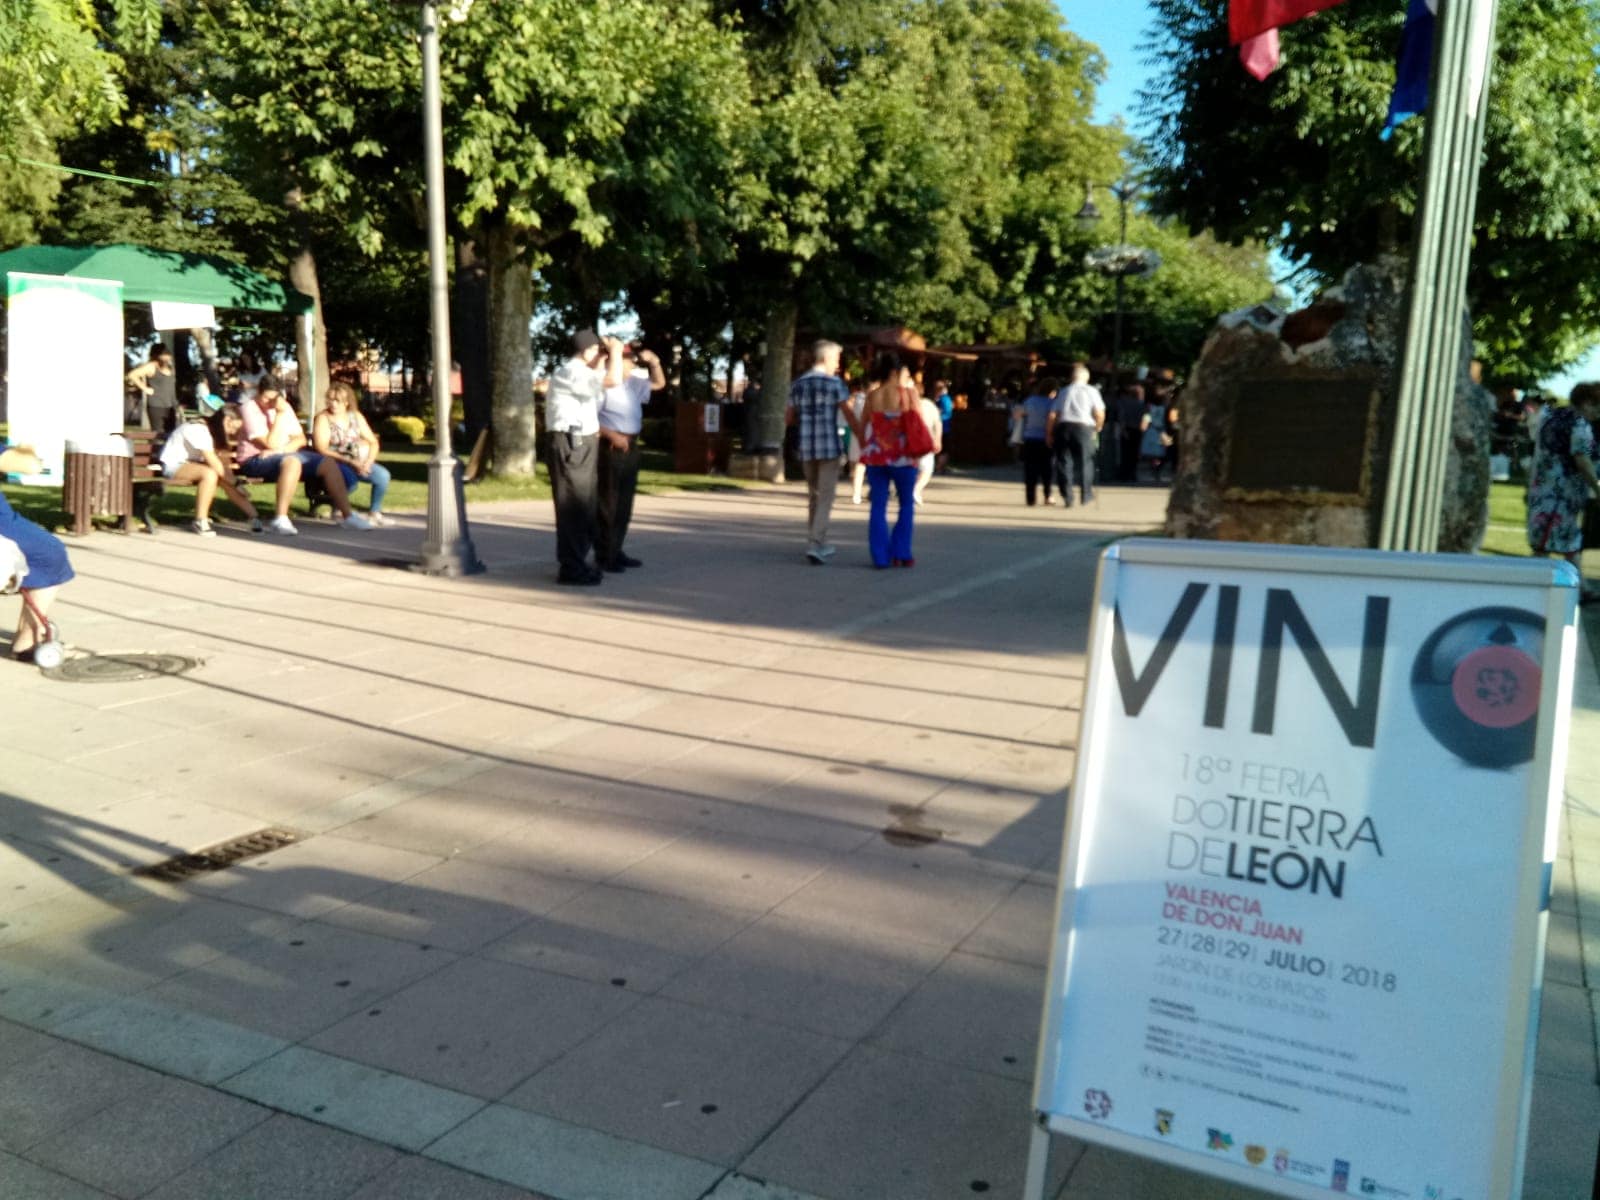 Fotos: El vino reina en Valencia de Don Juan